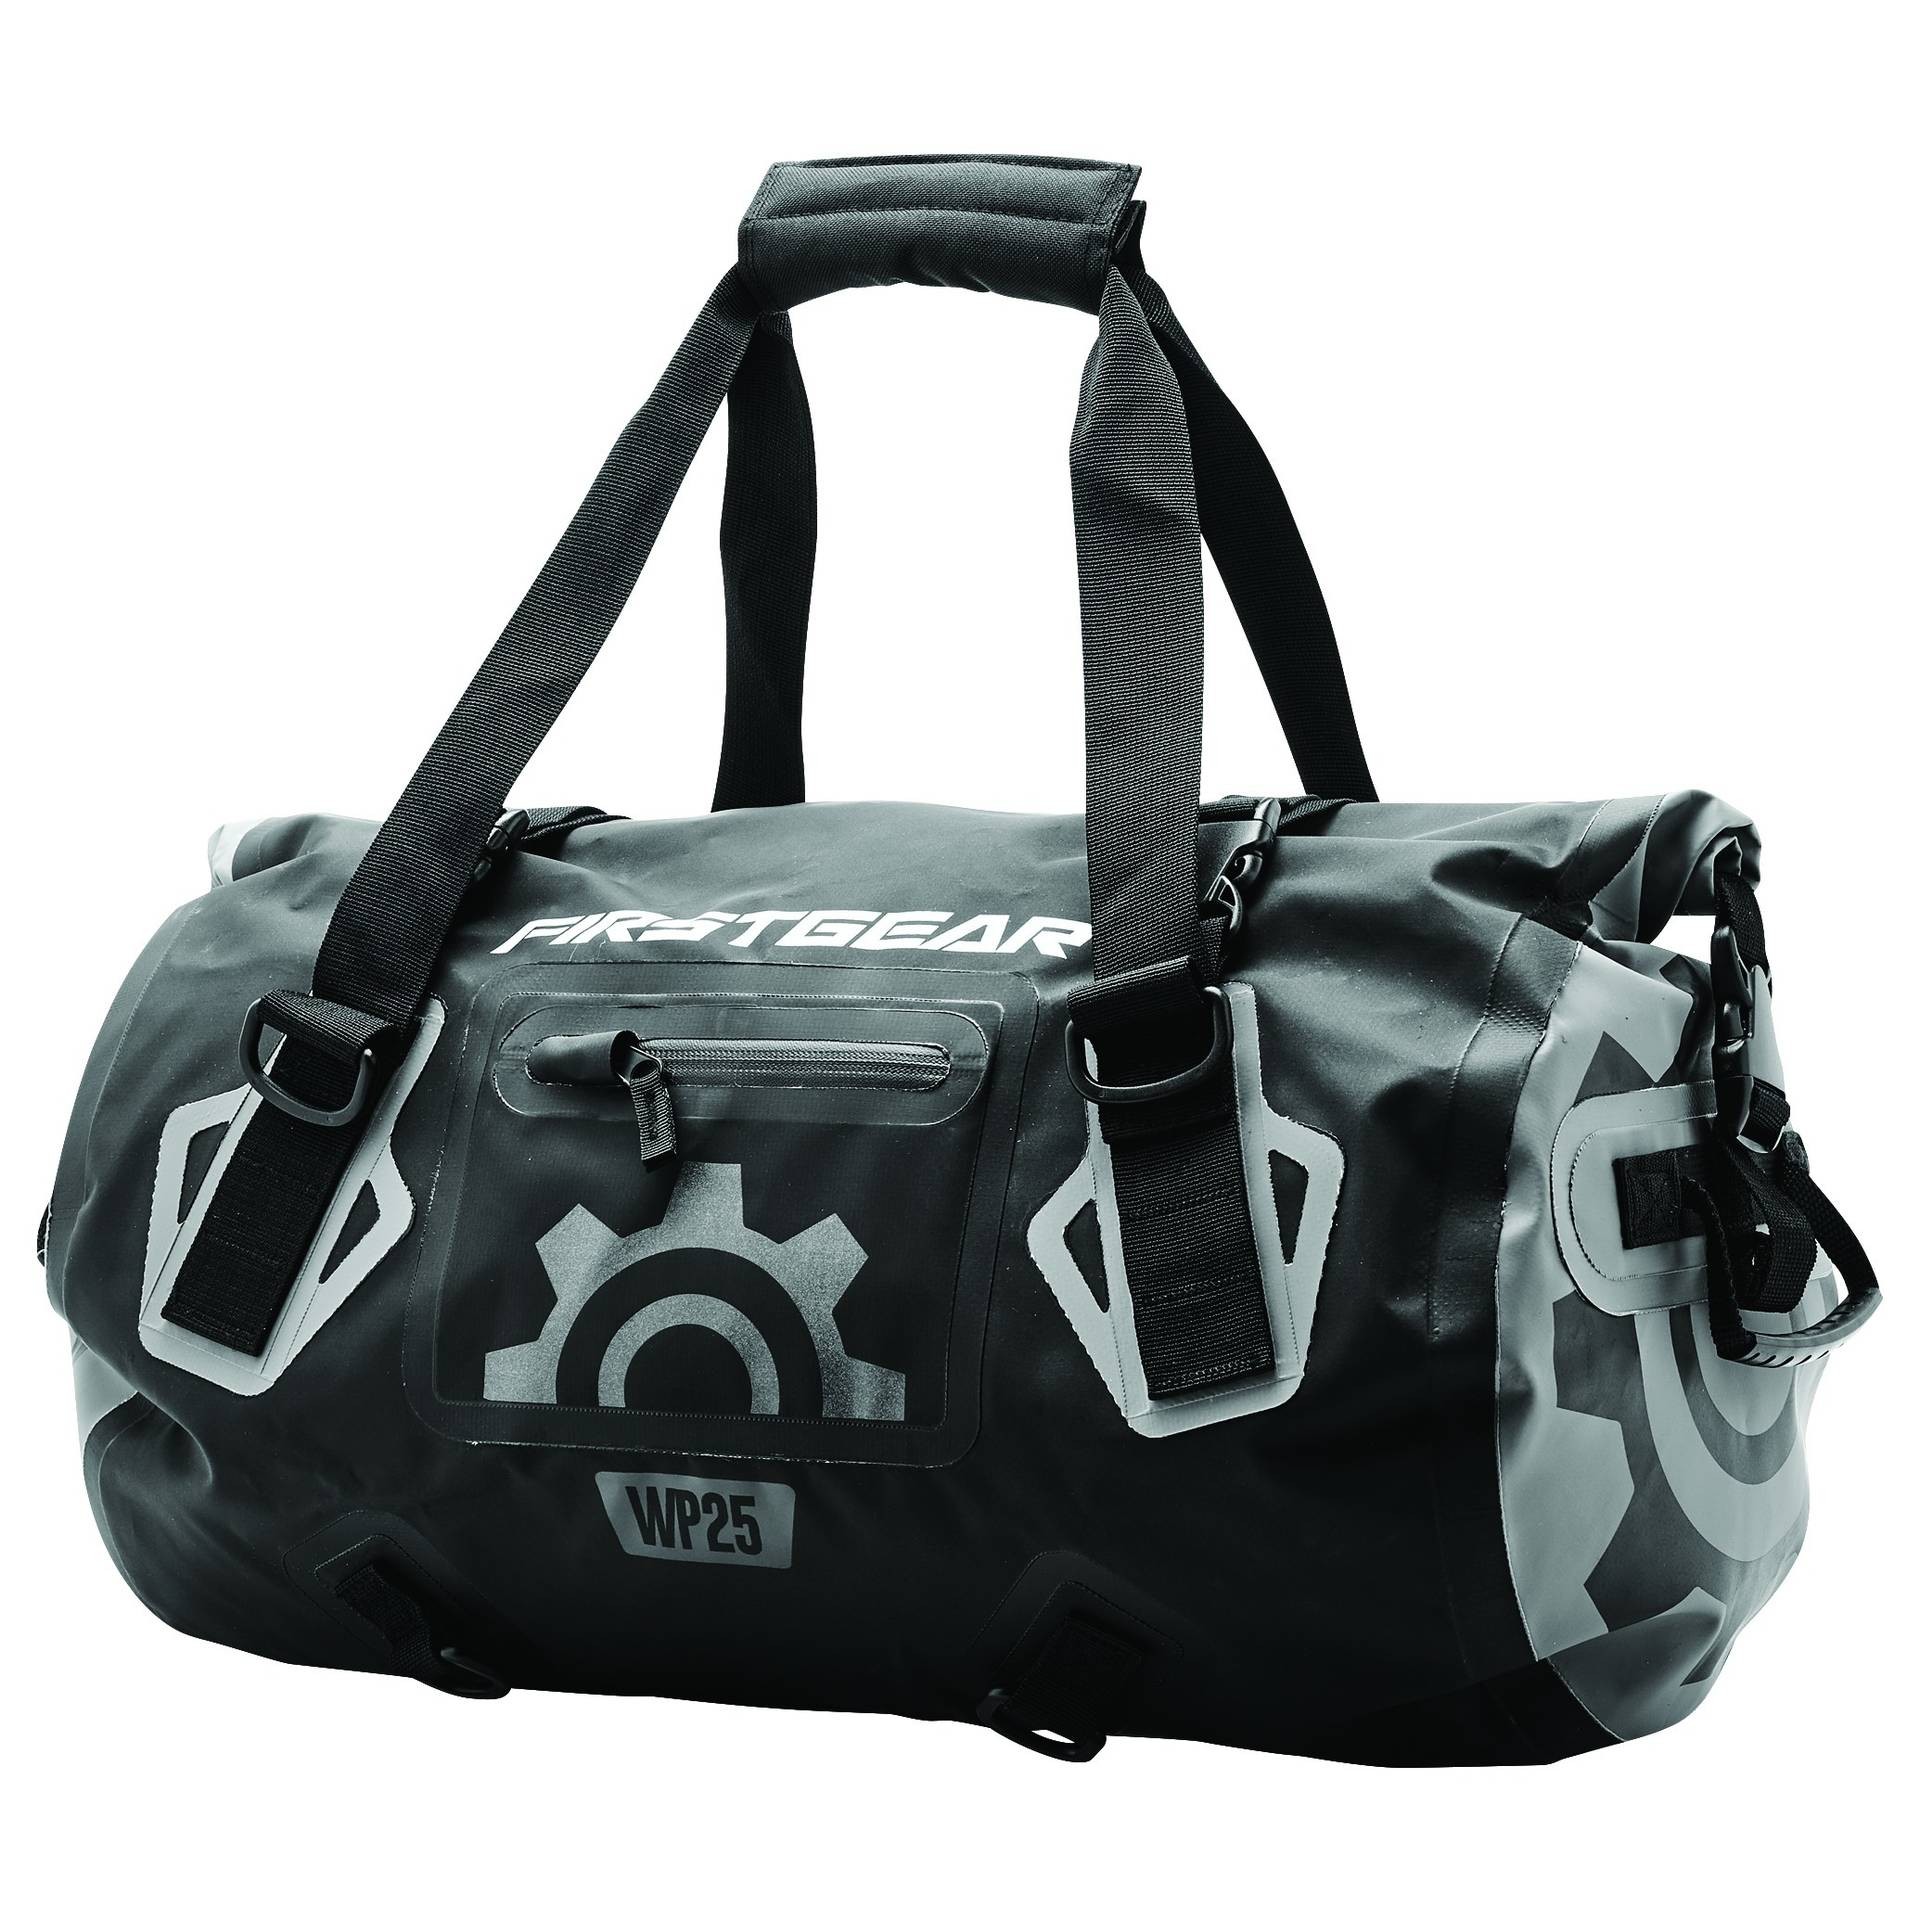 Firstgear Torrent Waterproof Duffel Bag - Tail & Rack Bags - Luggage / Racks - Accessories ...